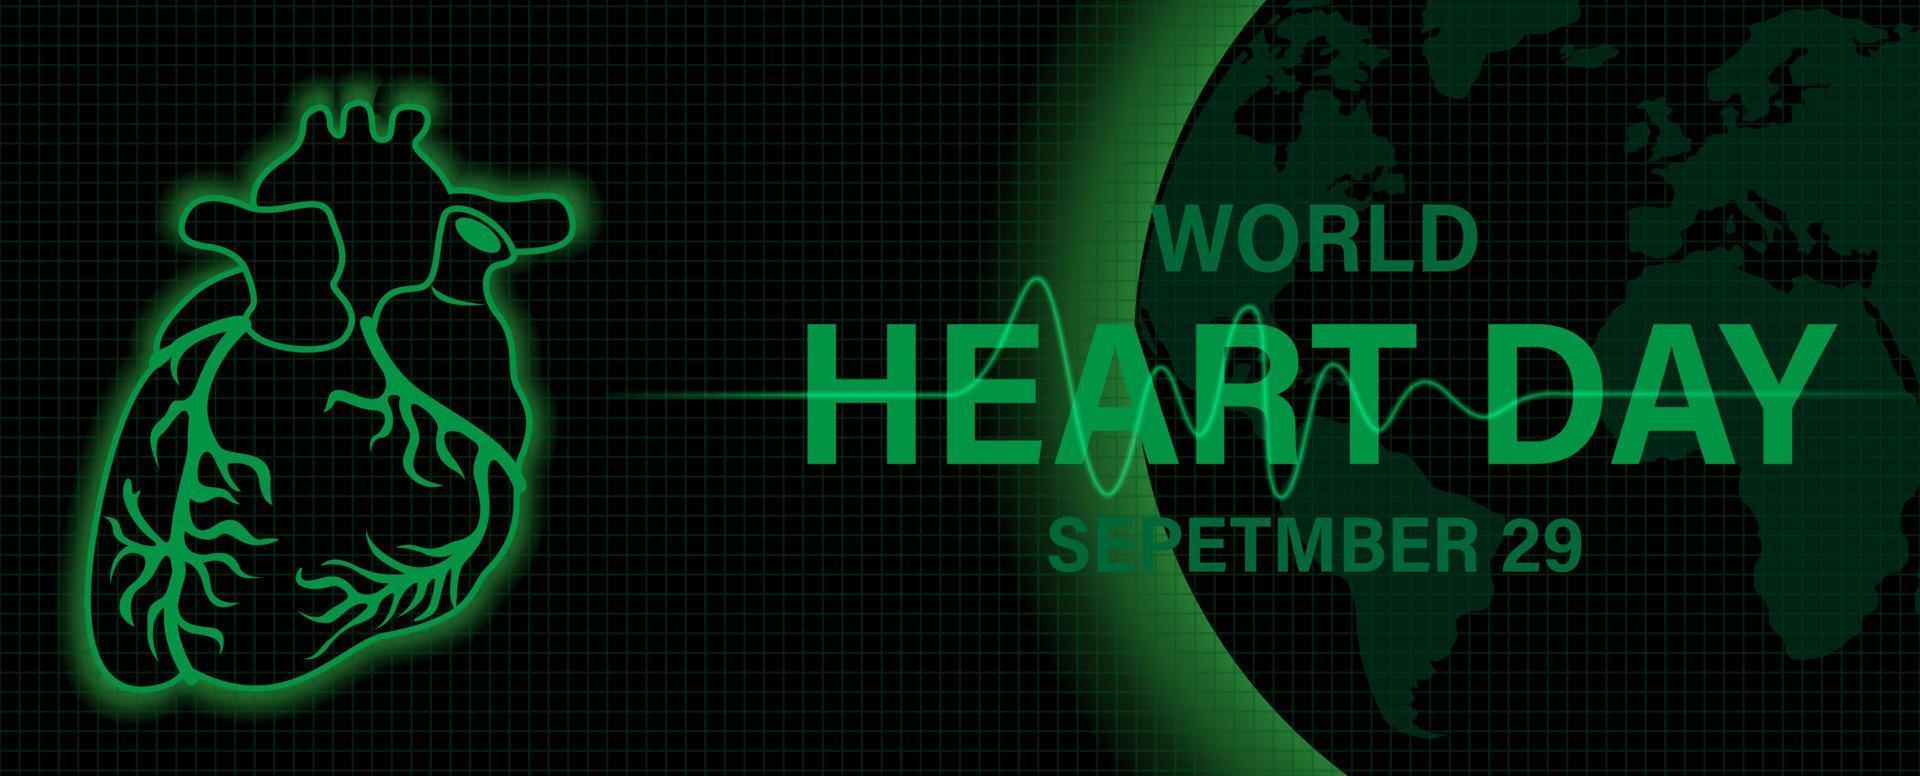 corazón humano con frecuencia cardíaca y el día y el nombre del evento en globo y fondo negro. la campaña de afiches del día mundial del corazón en color monótono verde parece un diseño de monitor de frecuencia cardíaca. vector